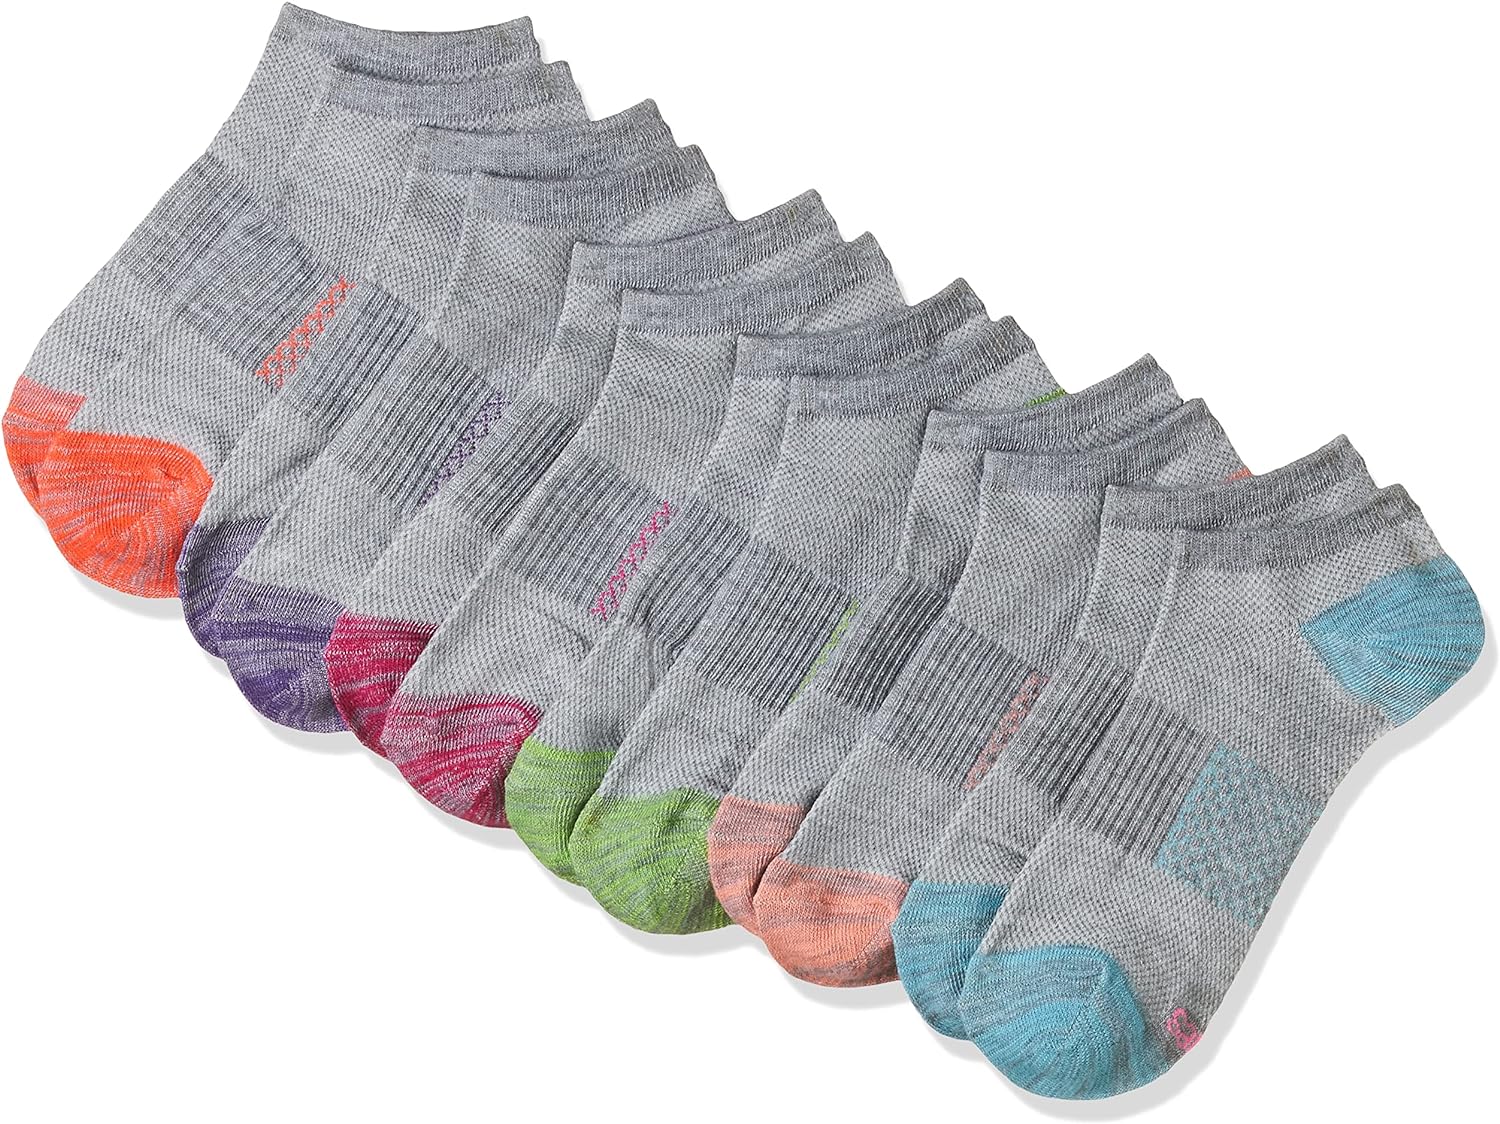 Hanes Women’s Socks, Lightweight Breathable Socks